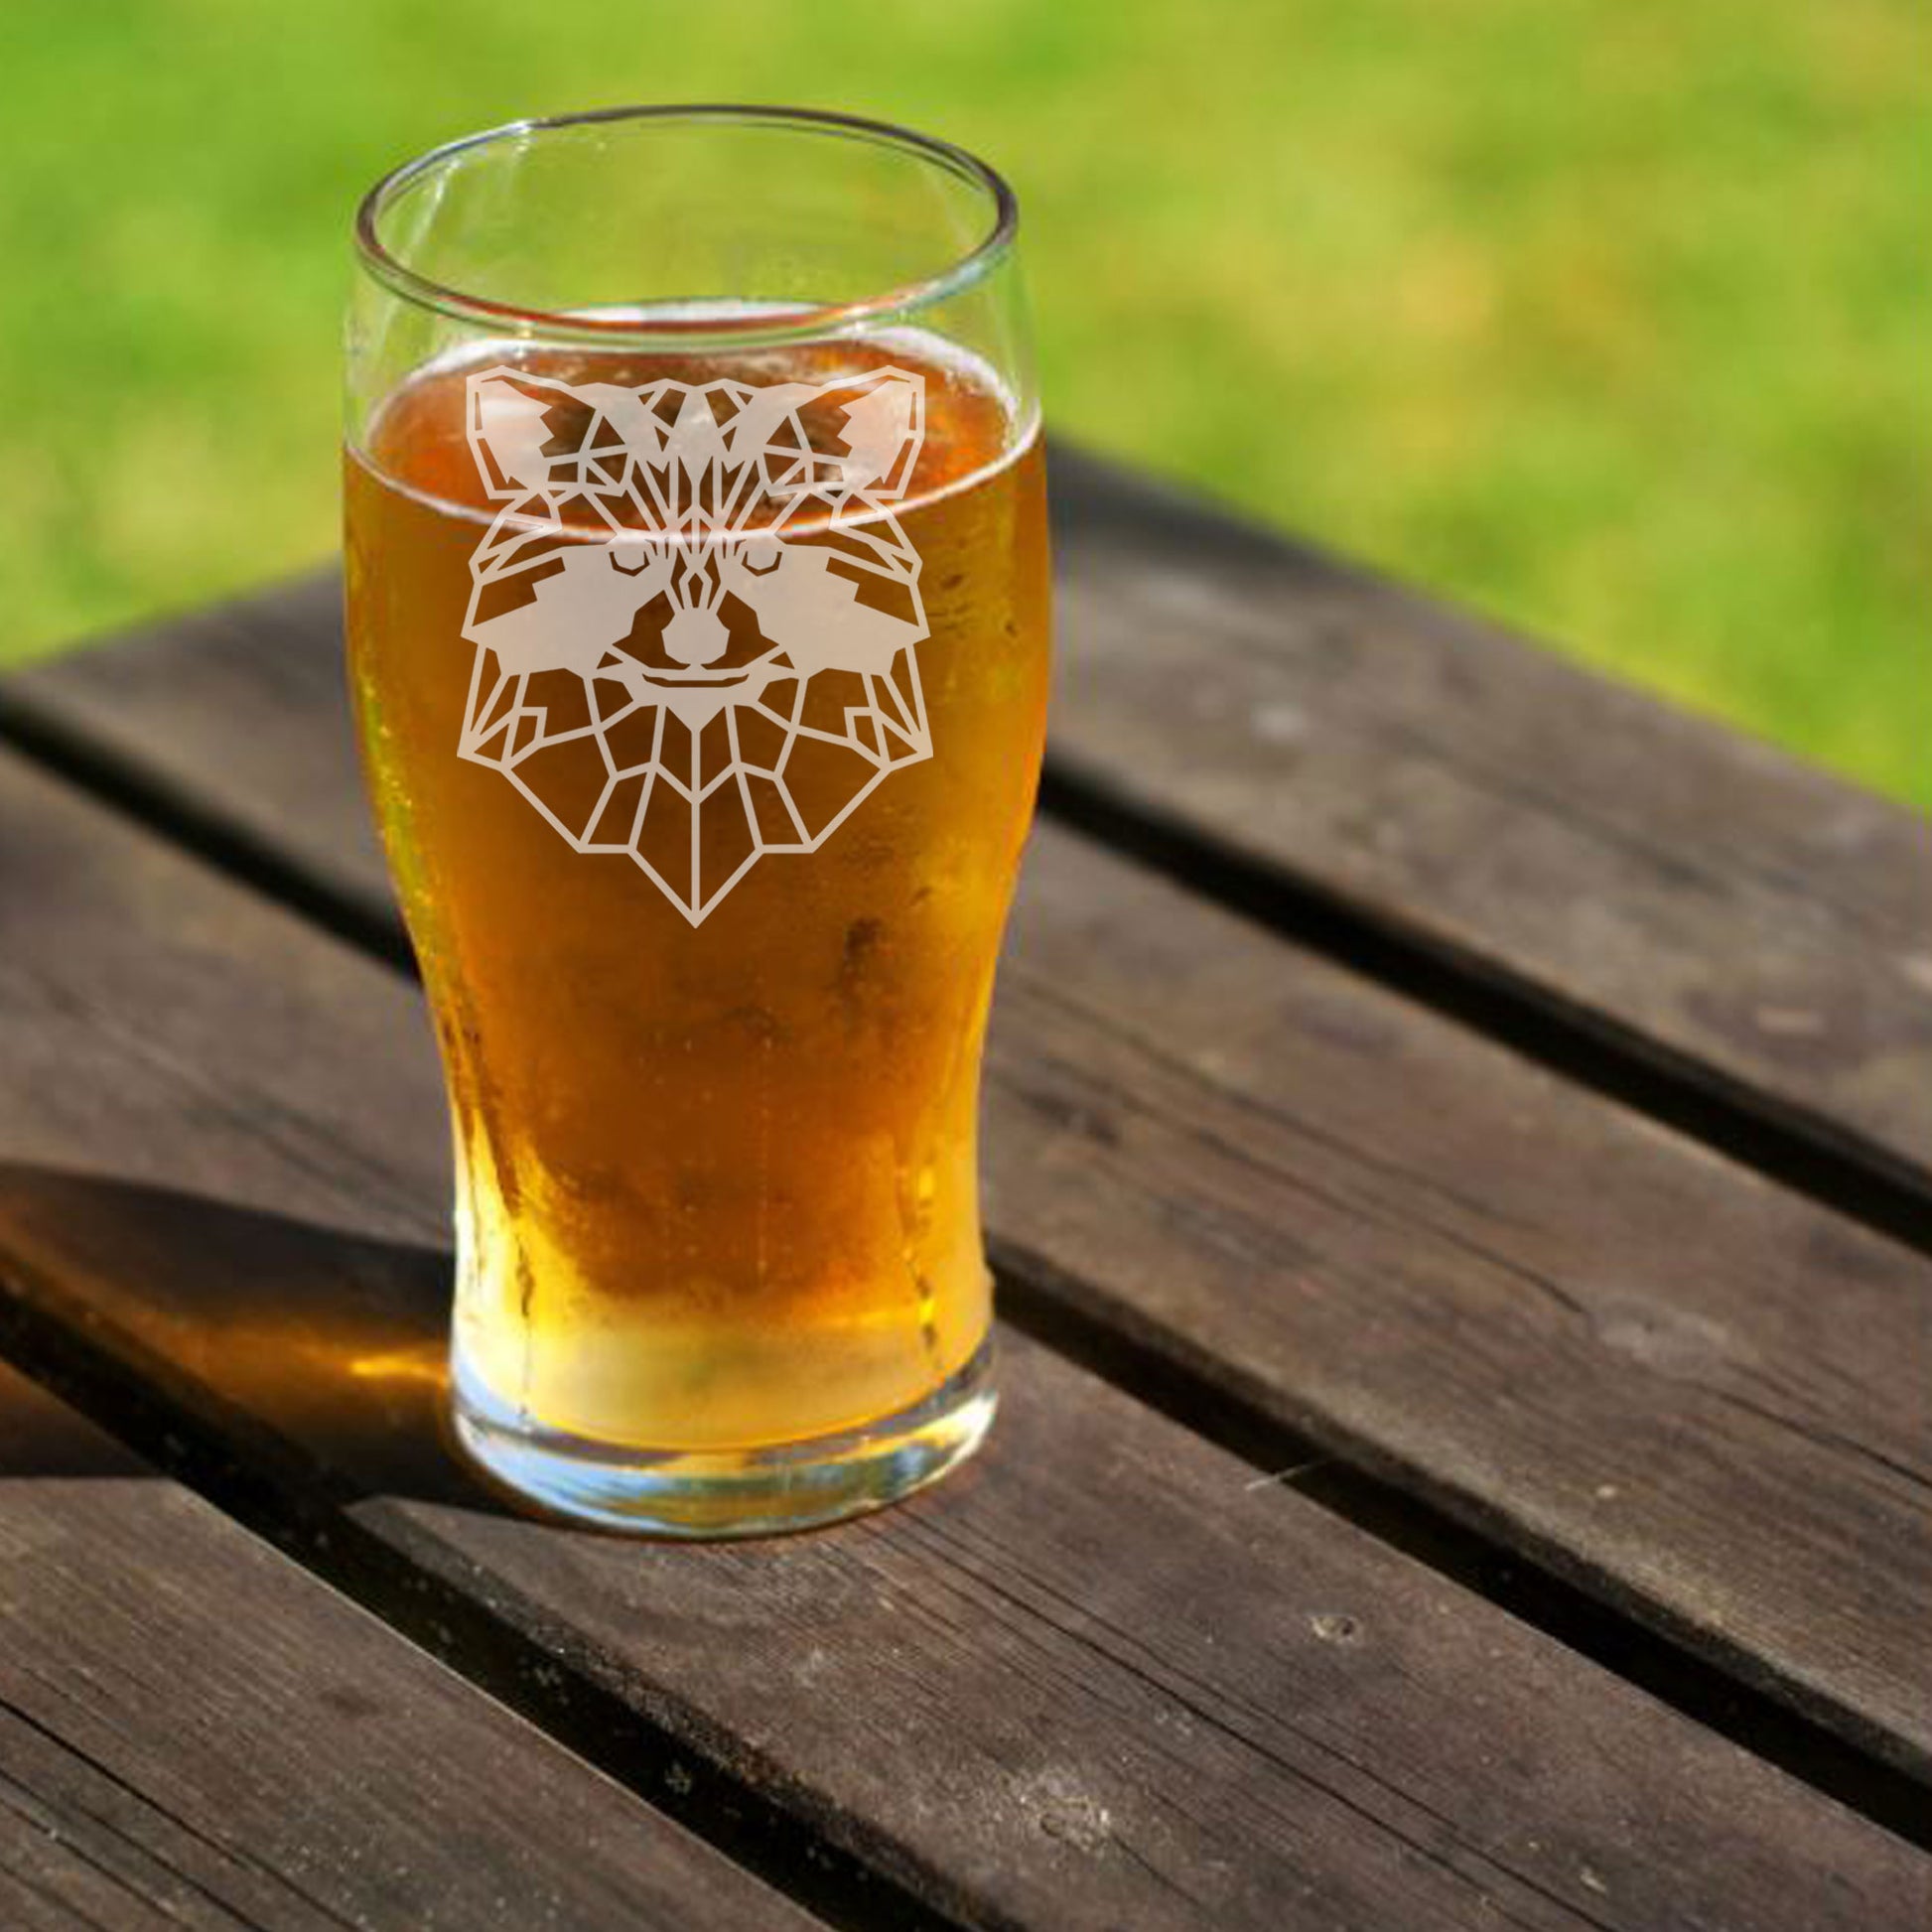 Racoon Engraved Beer Pint Glass  - Always Looking Good -   